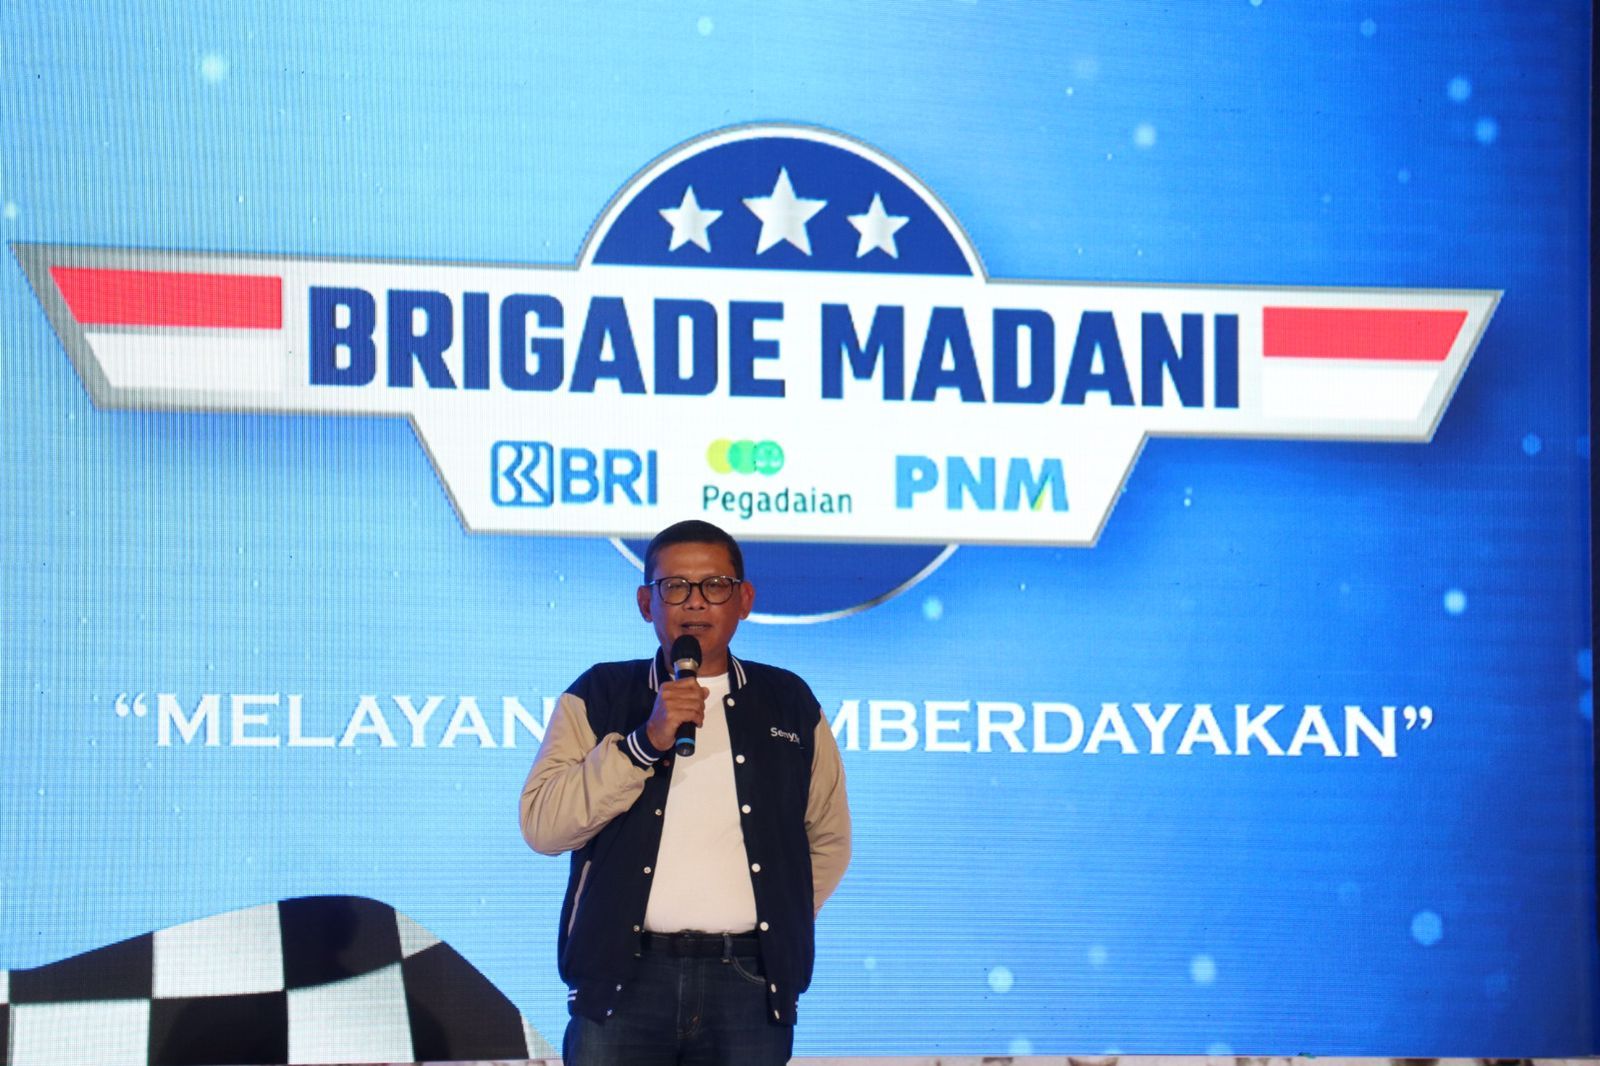 PNM gelar roadshow Internalisasi dan Sosialisasi kultur Brigade Madani (BRI, Gade/ Pegadaian dan Permodalan Nasional Madani) di Royal Ambarrukmo, Yogyakarta (22/03)